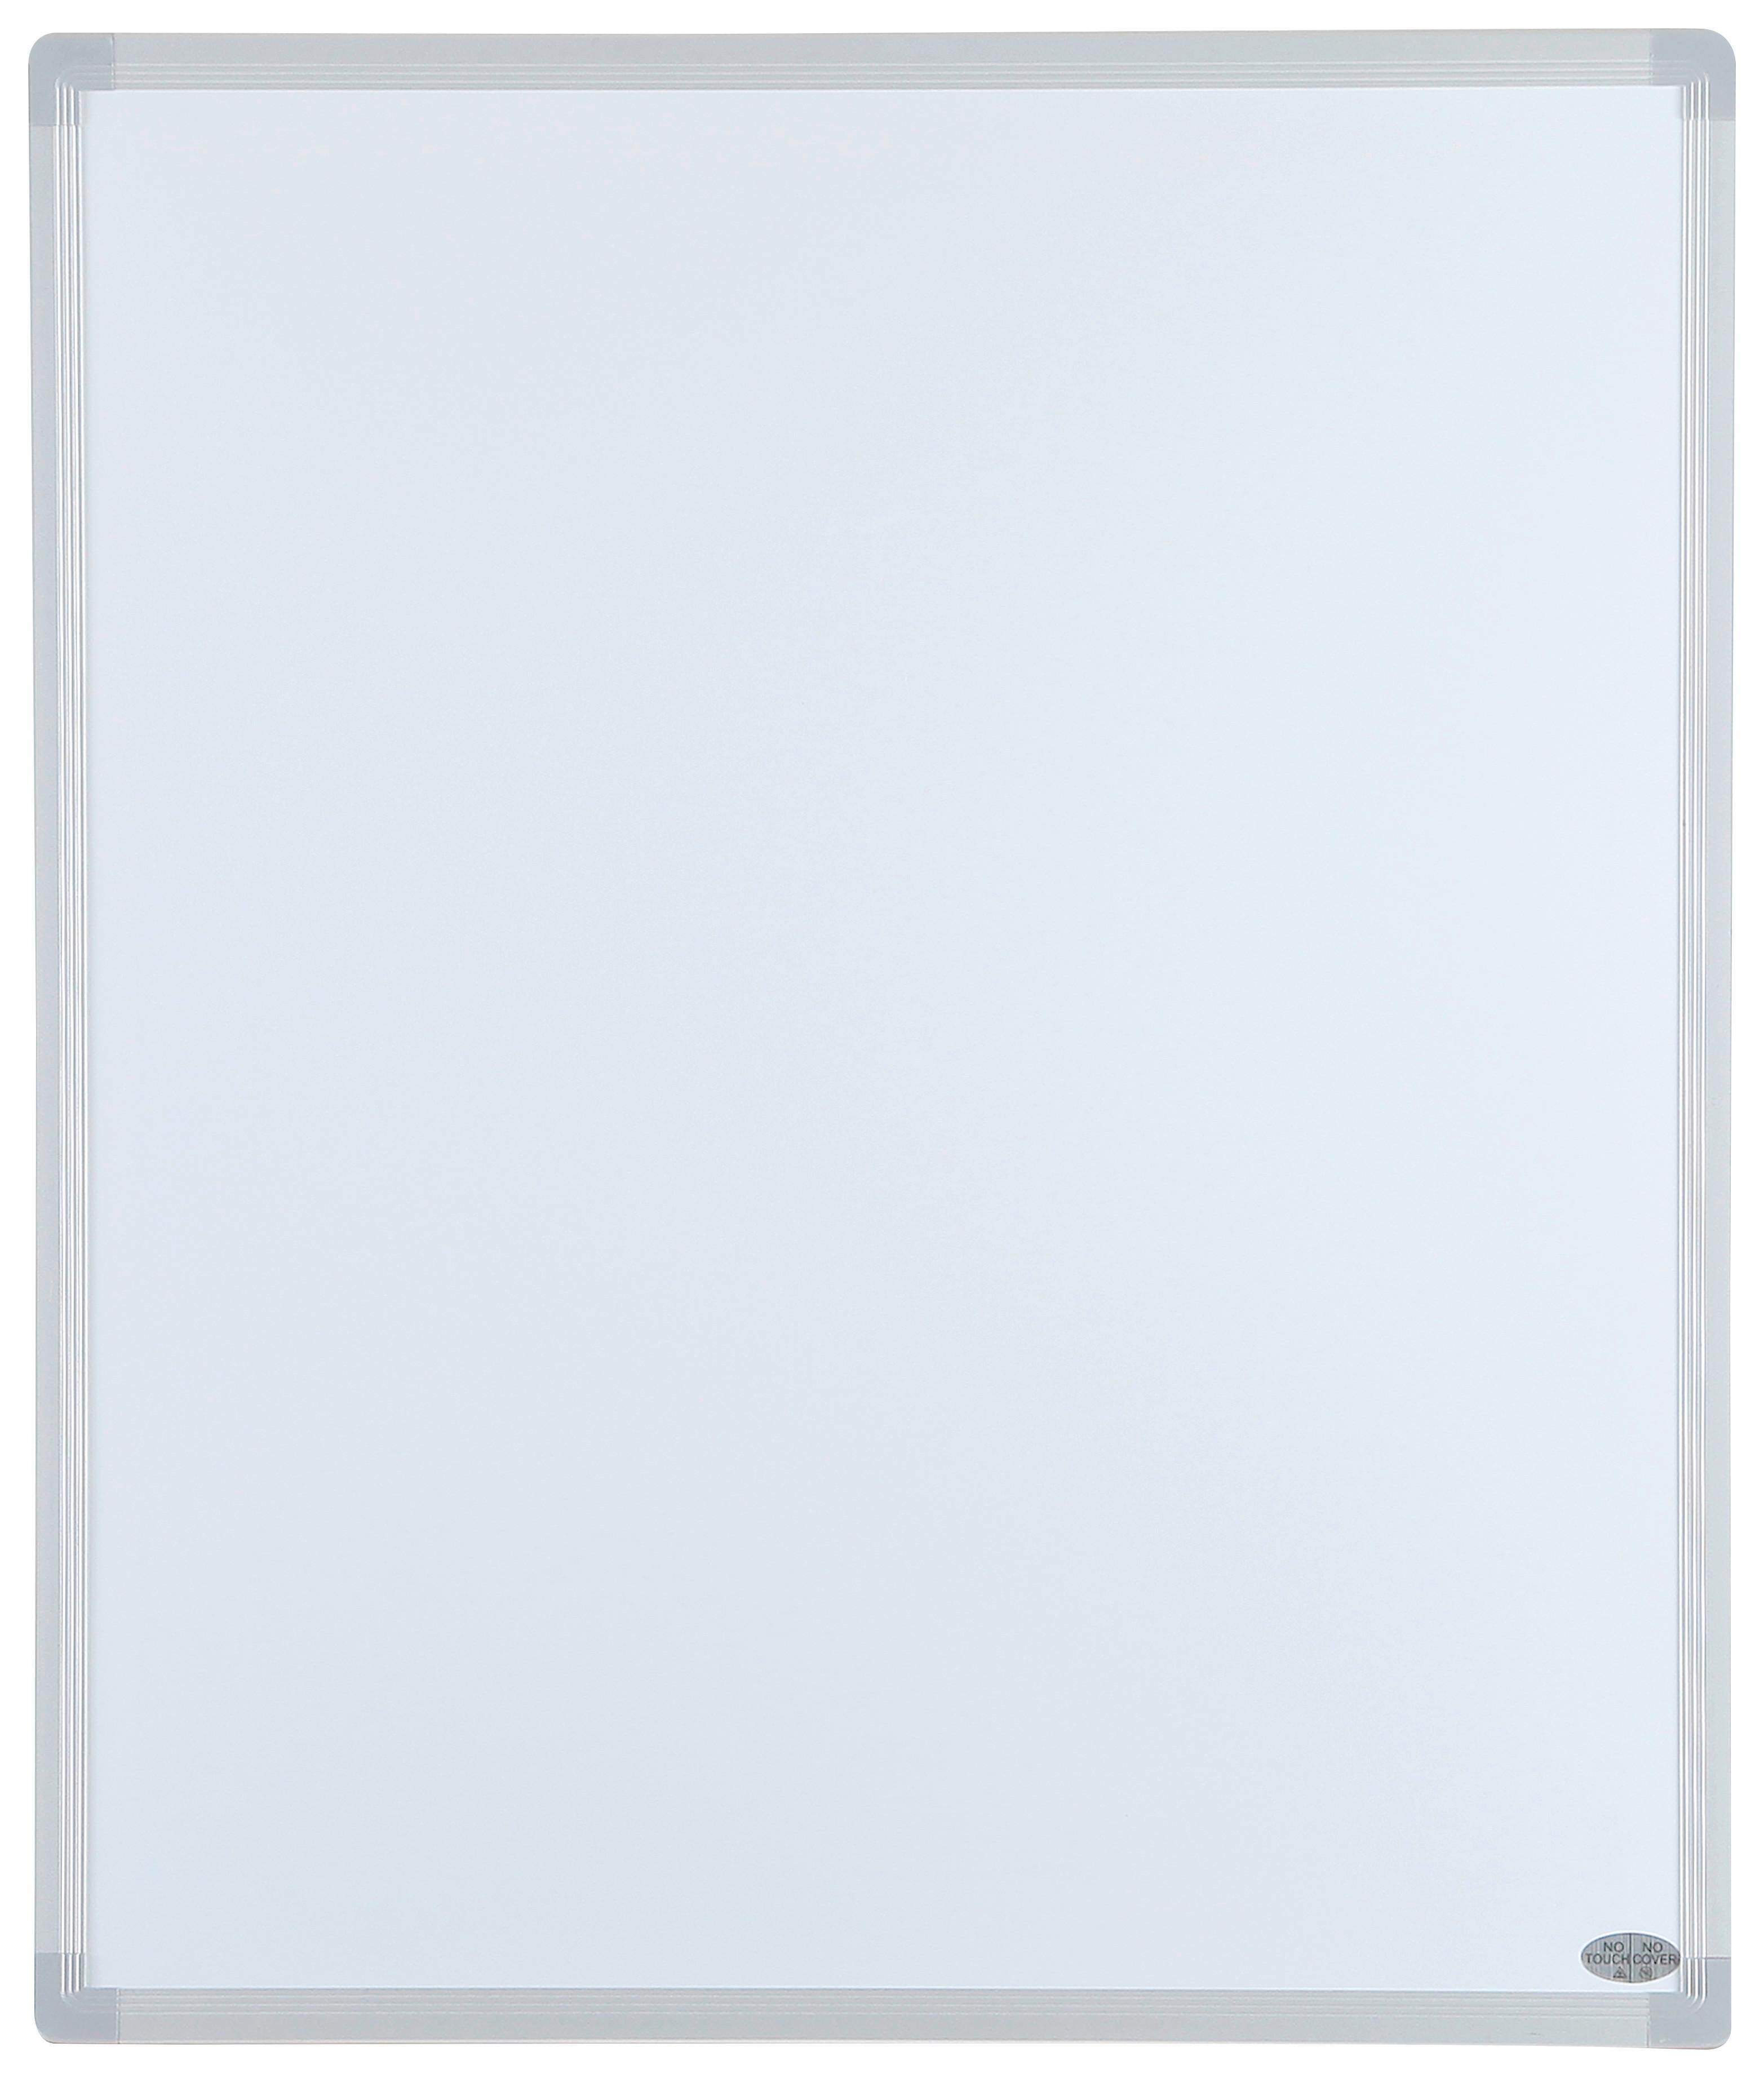 Infrarot Heizung 300 W Weiß Heatforce 60x50 cm - Weiß, MODERN, Metall (60/50/2,2cm) - Homezone